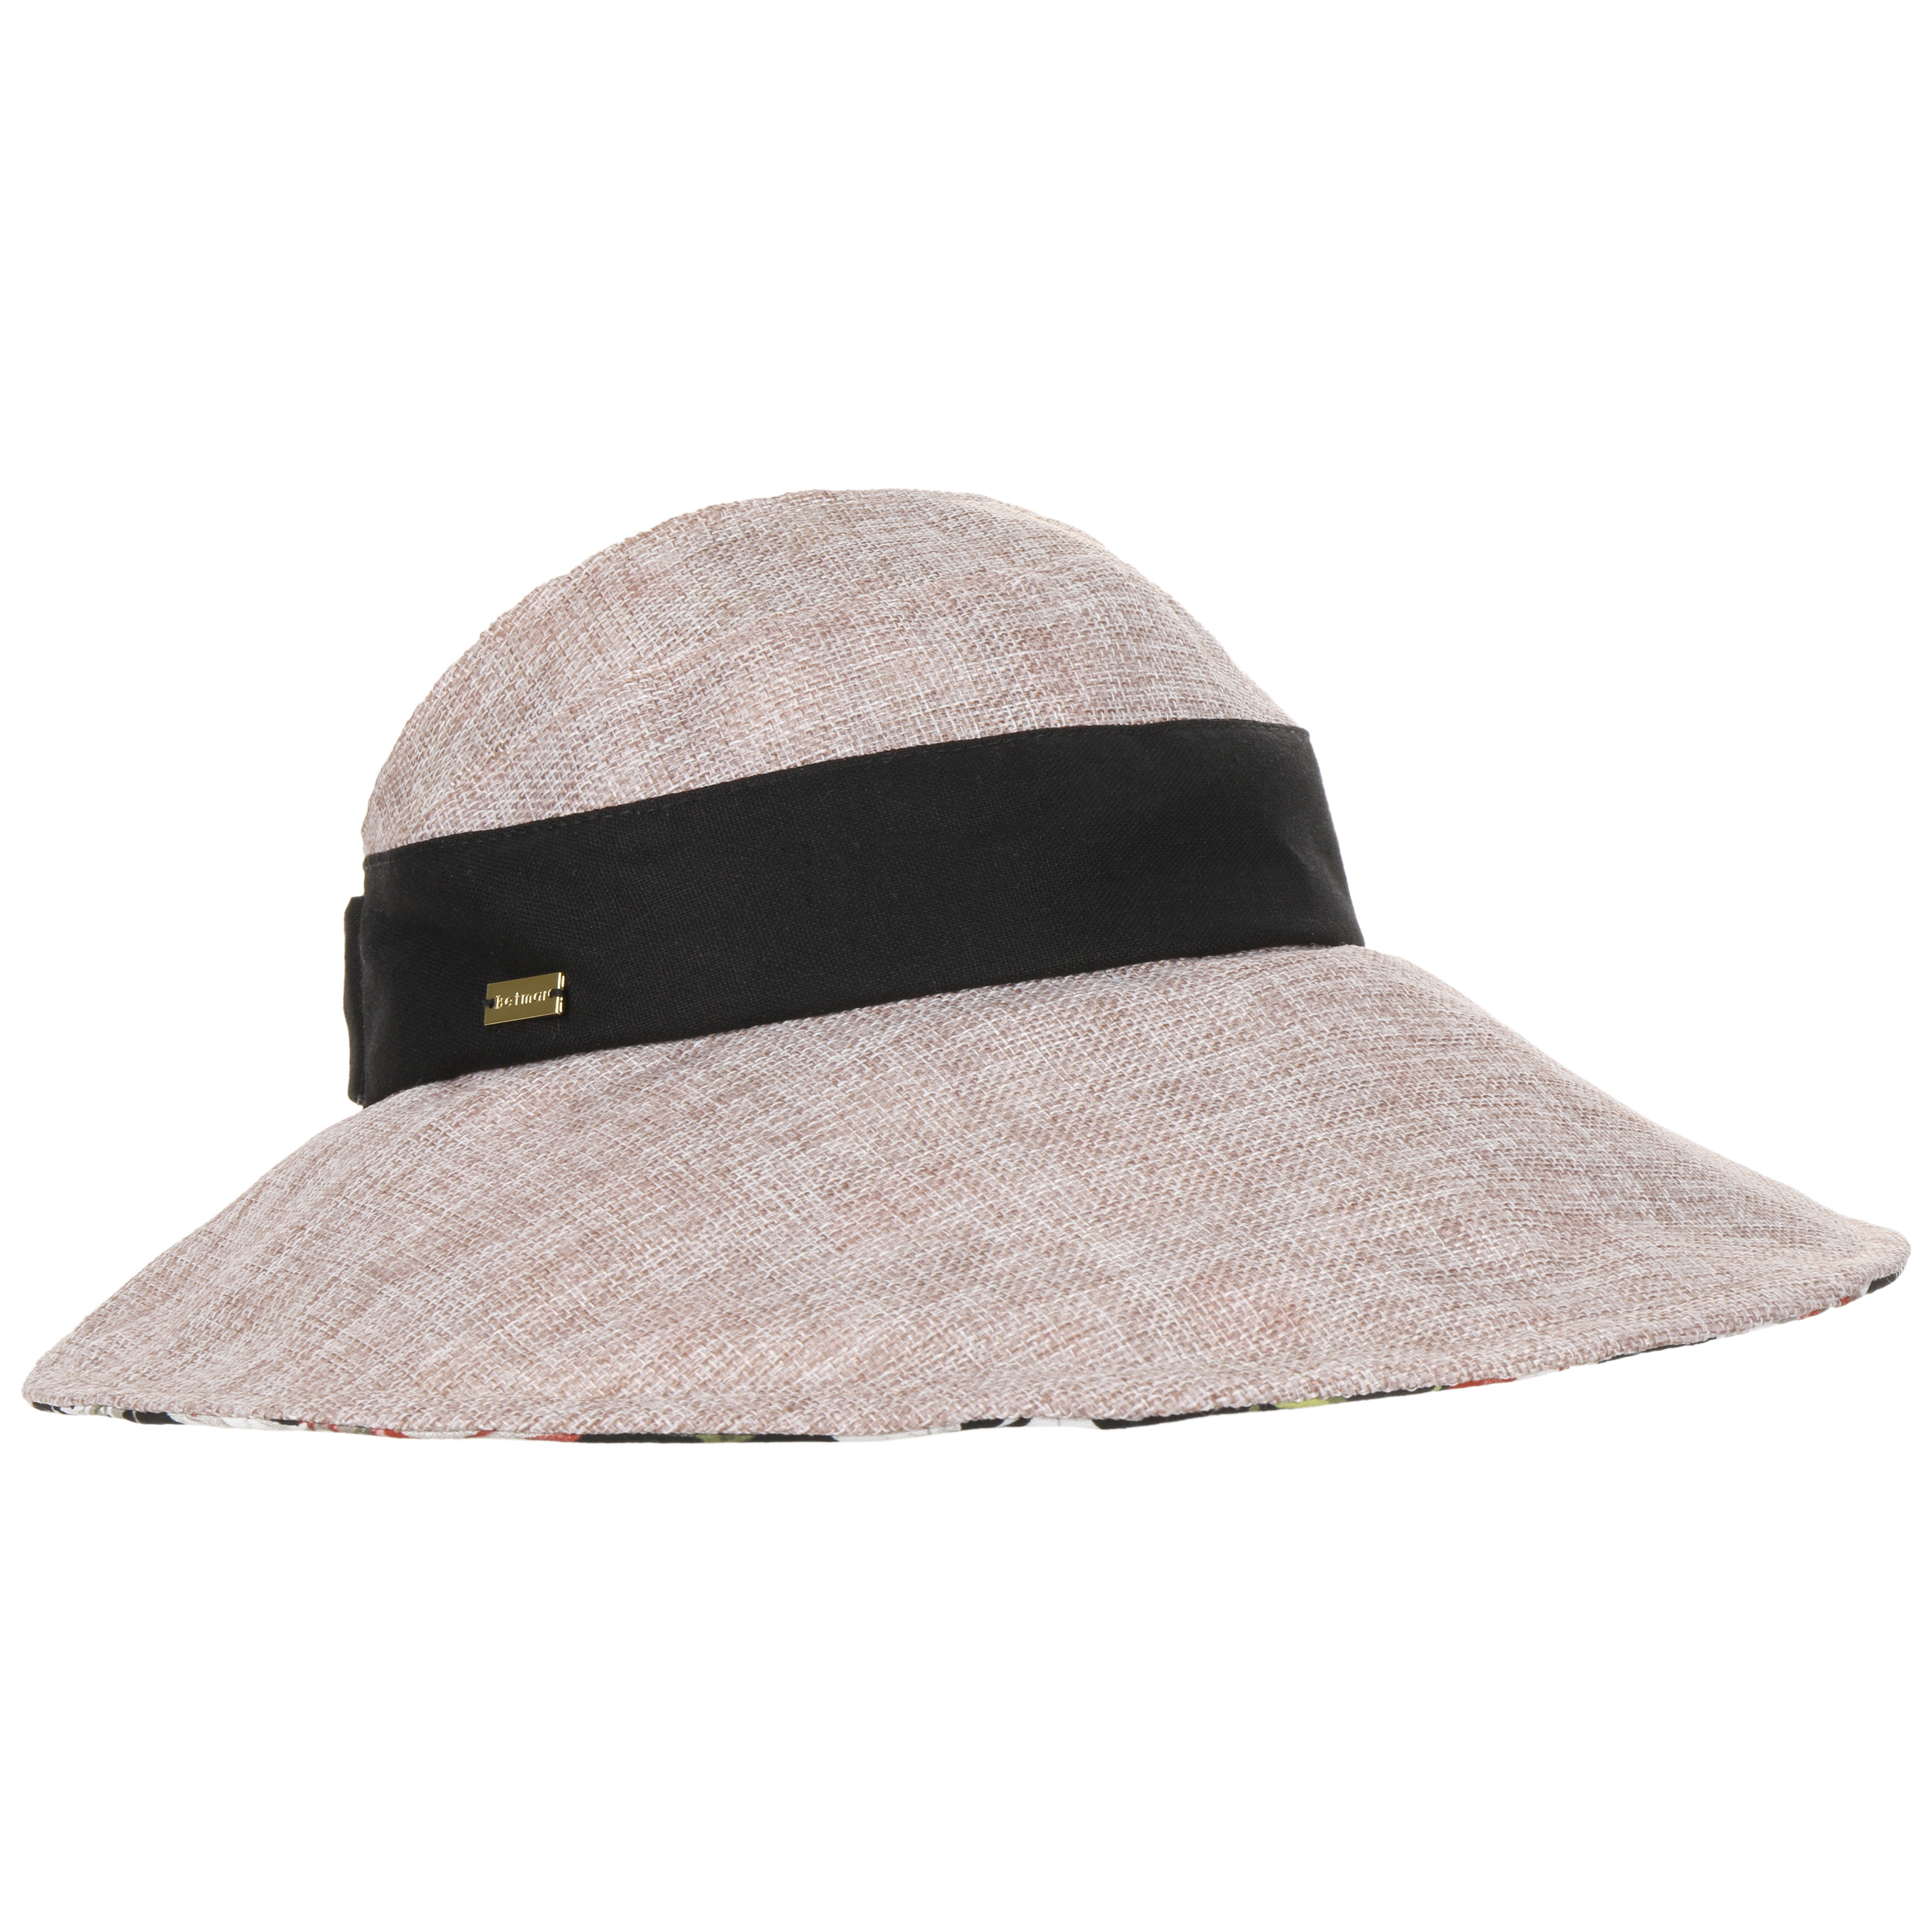 Accessoires Chapeaux et casquettes Chapeaux de soleil et visières Chapeaux de soleil Chapeau floral beige clair 